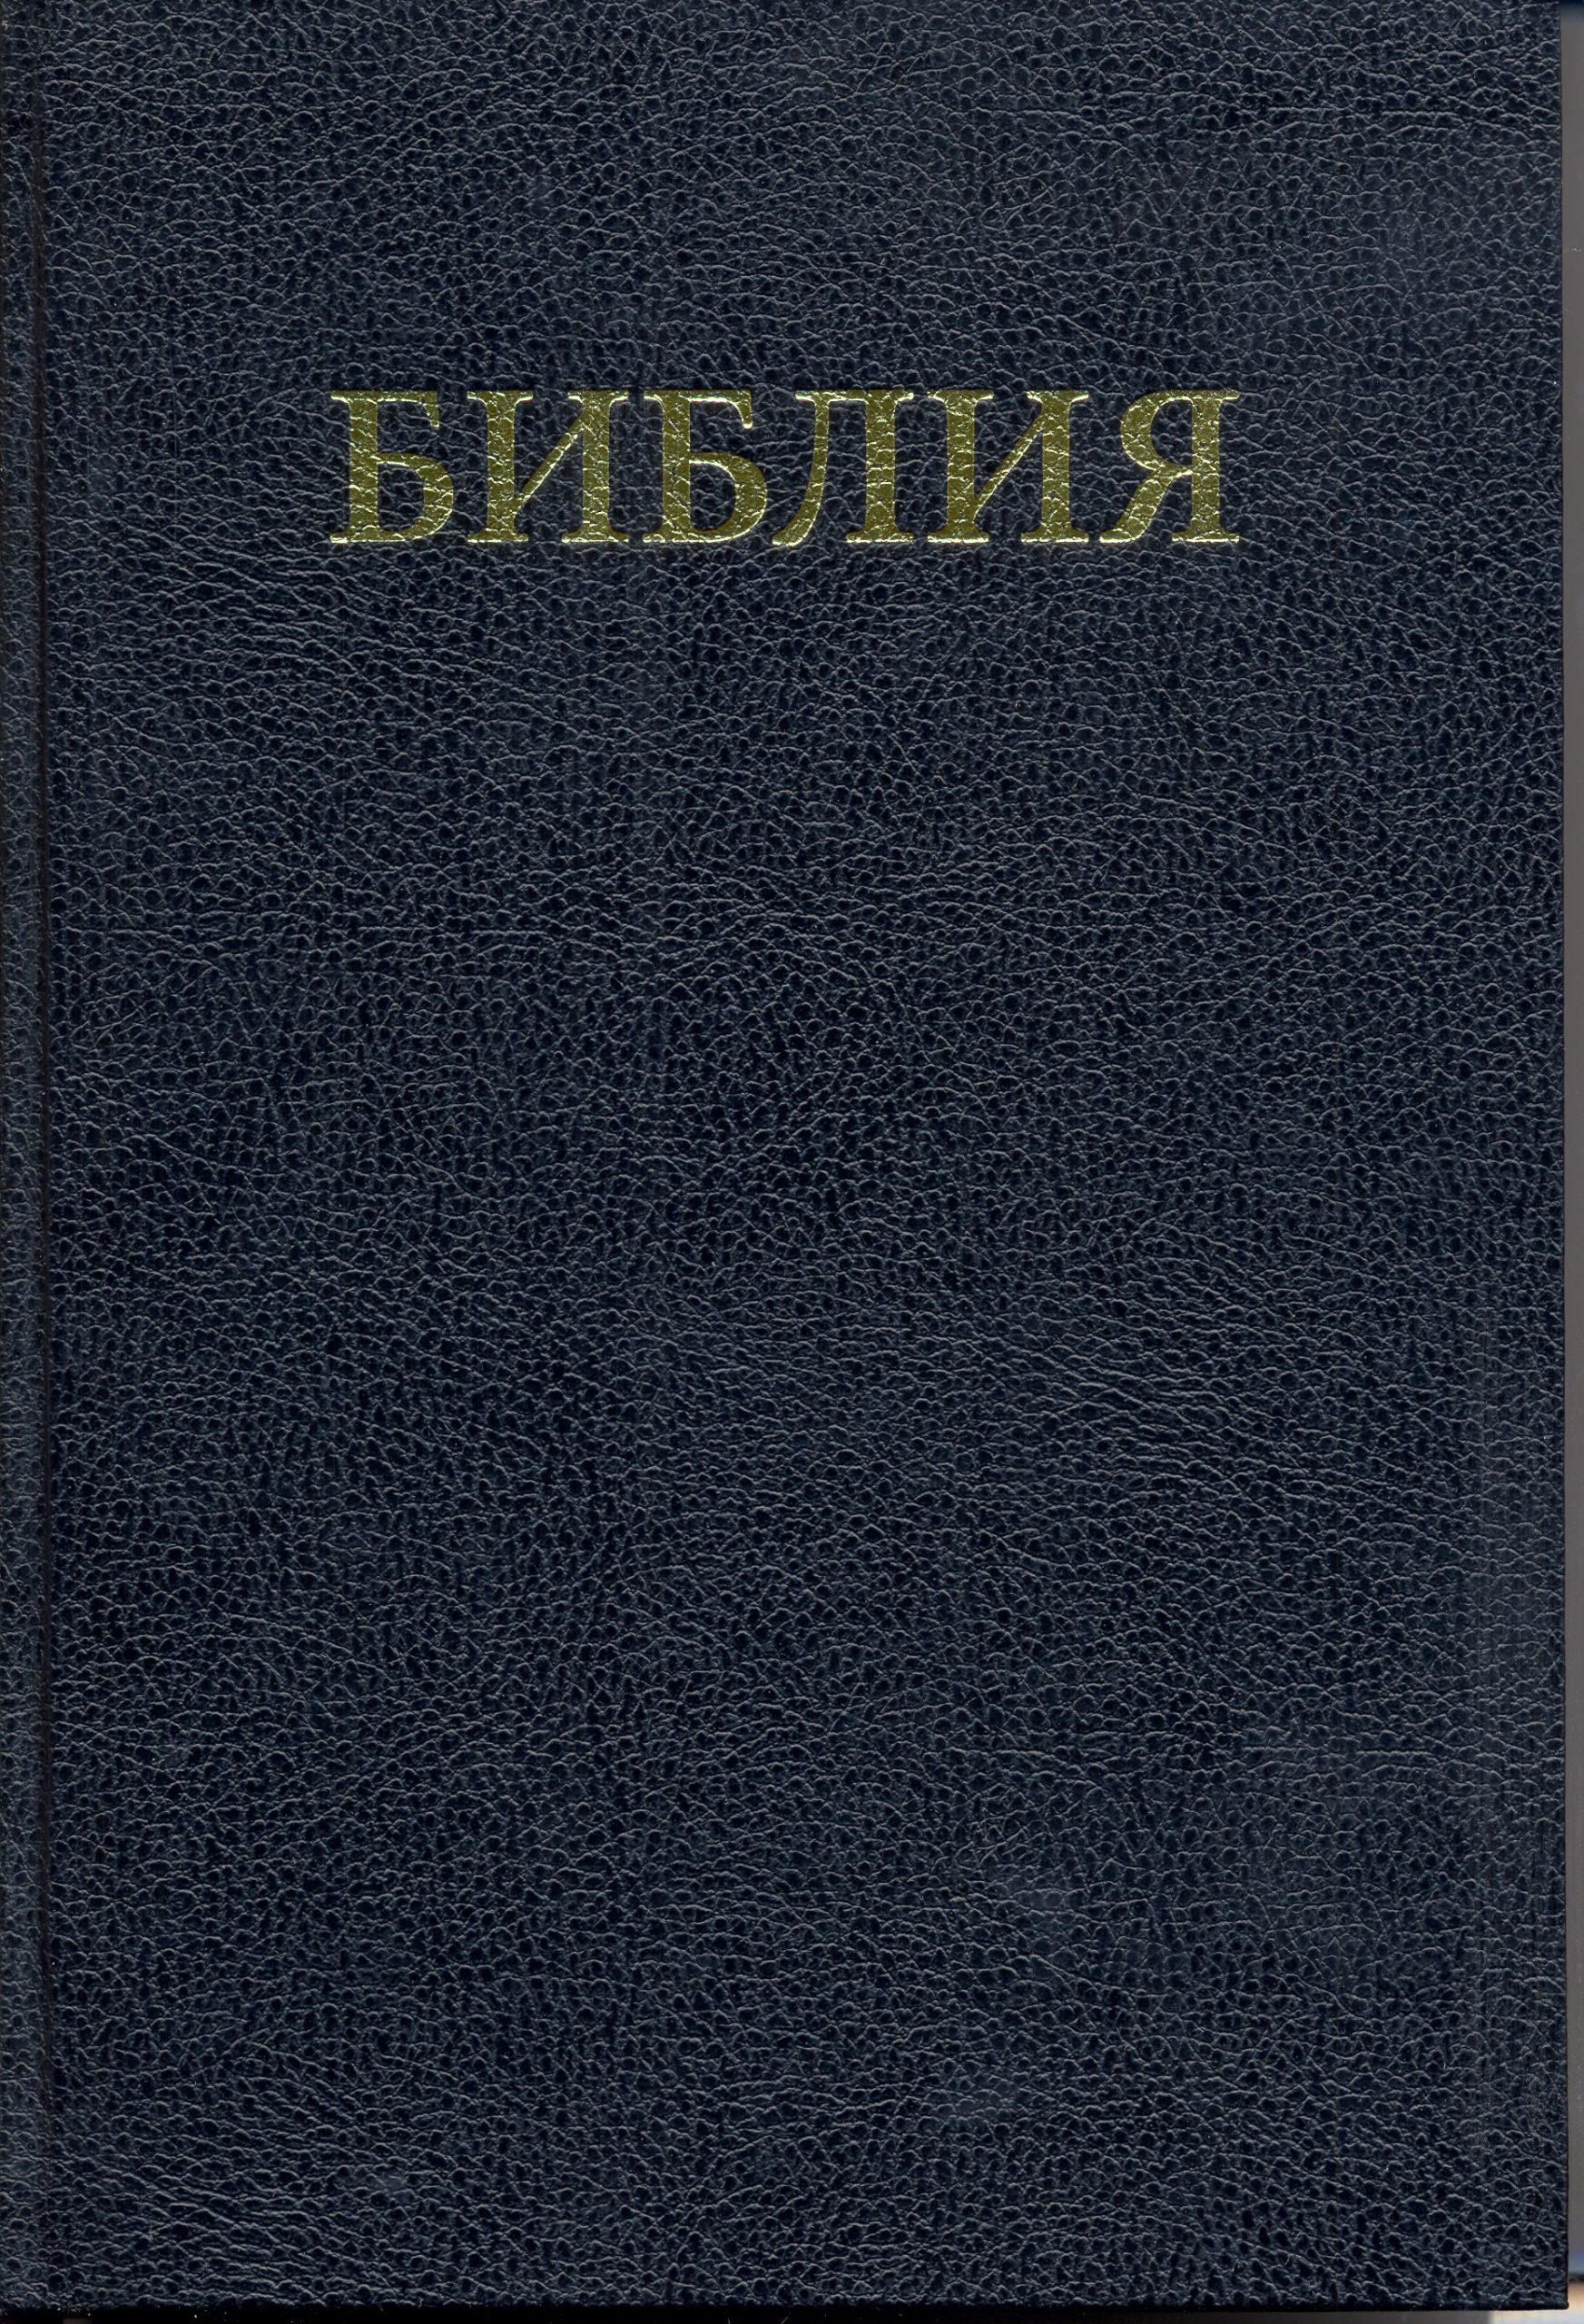 Bible Large print (10.5 point) (6.1x8.9")